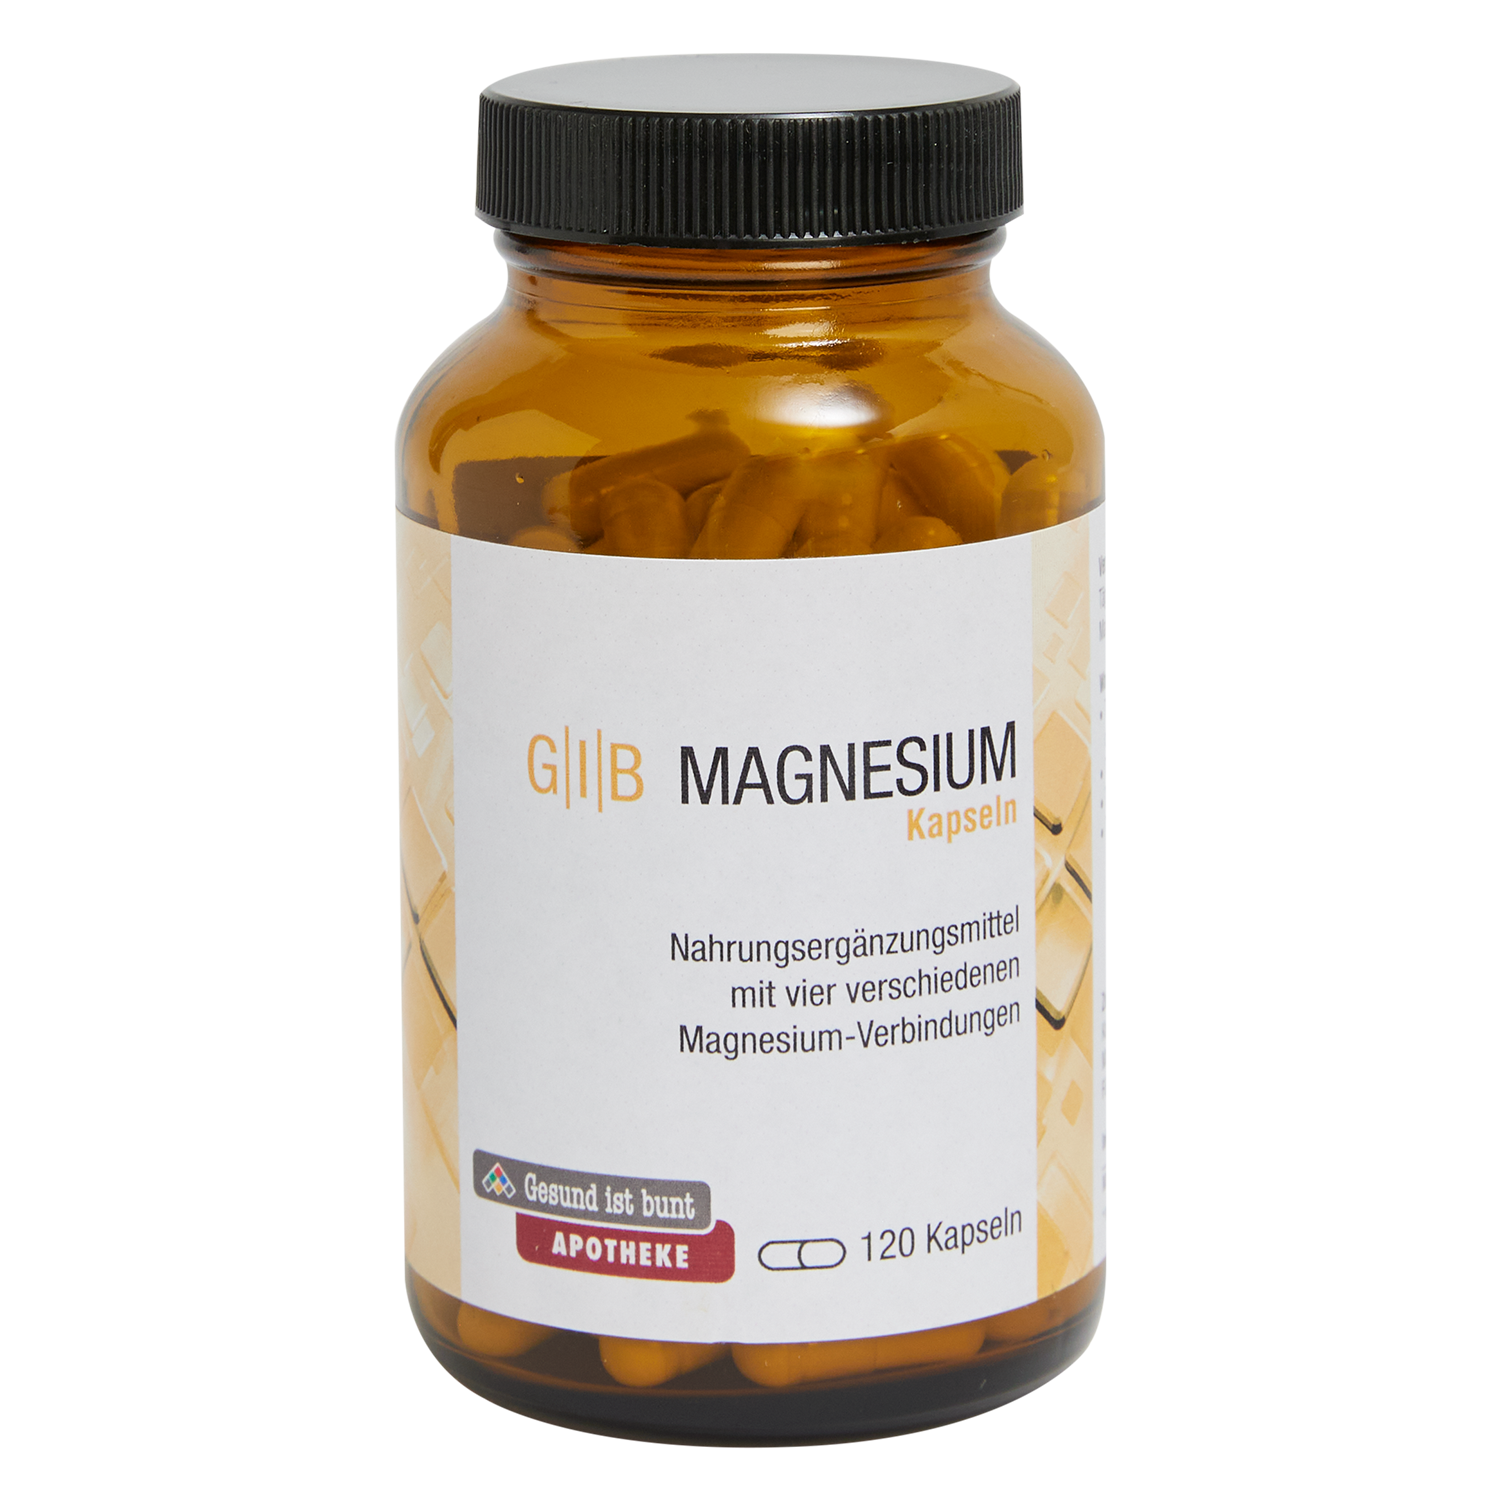 G|I|B Magnesium Kapseln 